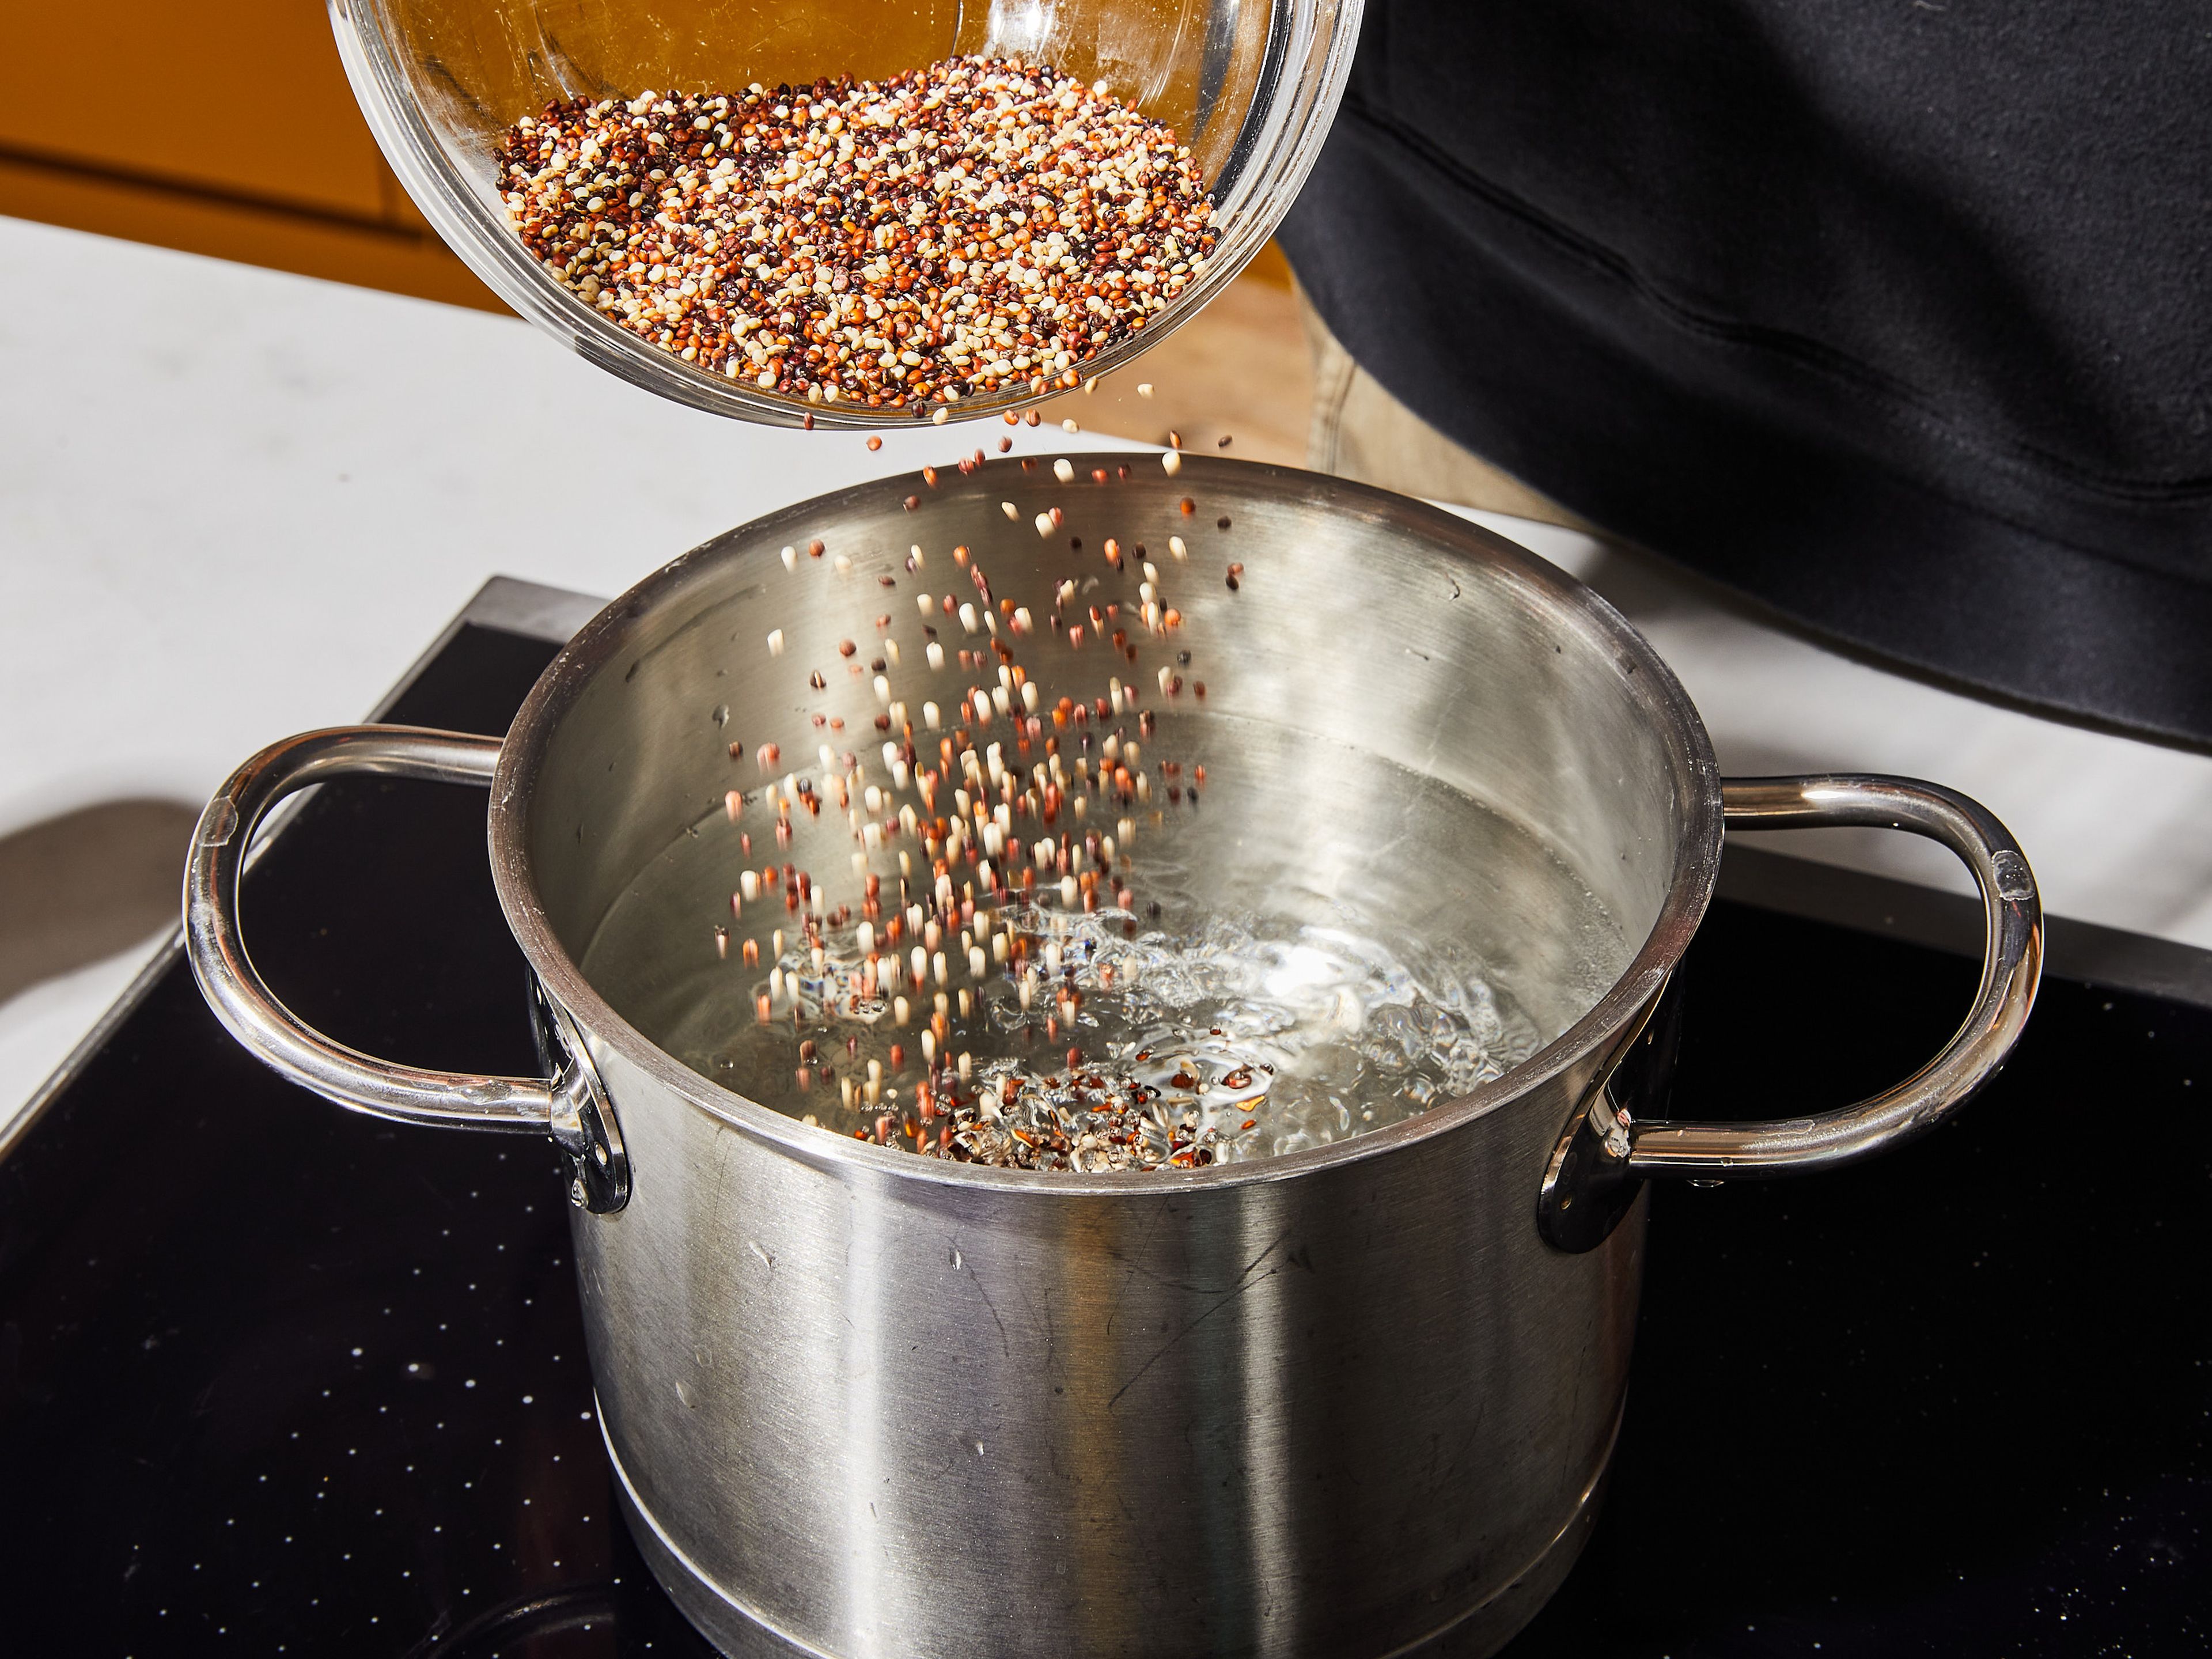 In der Zwischenzeit, Quinoa in einem Sieb unter kaltem Wasser abspülen. Wasser in einen kleinen Topf geben und zum Kochen bringen. Dann eine Prise Salz und die gespülte Quinoa hinzufügen. Bei mittlerer Hitze ca. 15 Min. köcheln lassen, bis die Quinoa gar ist. Mit einer Gabel auflockern und beiseite stellen.